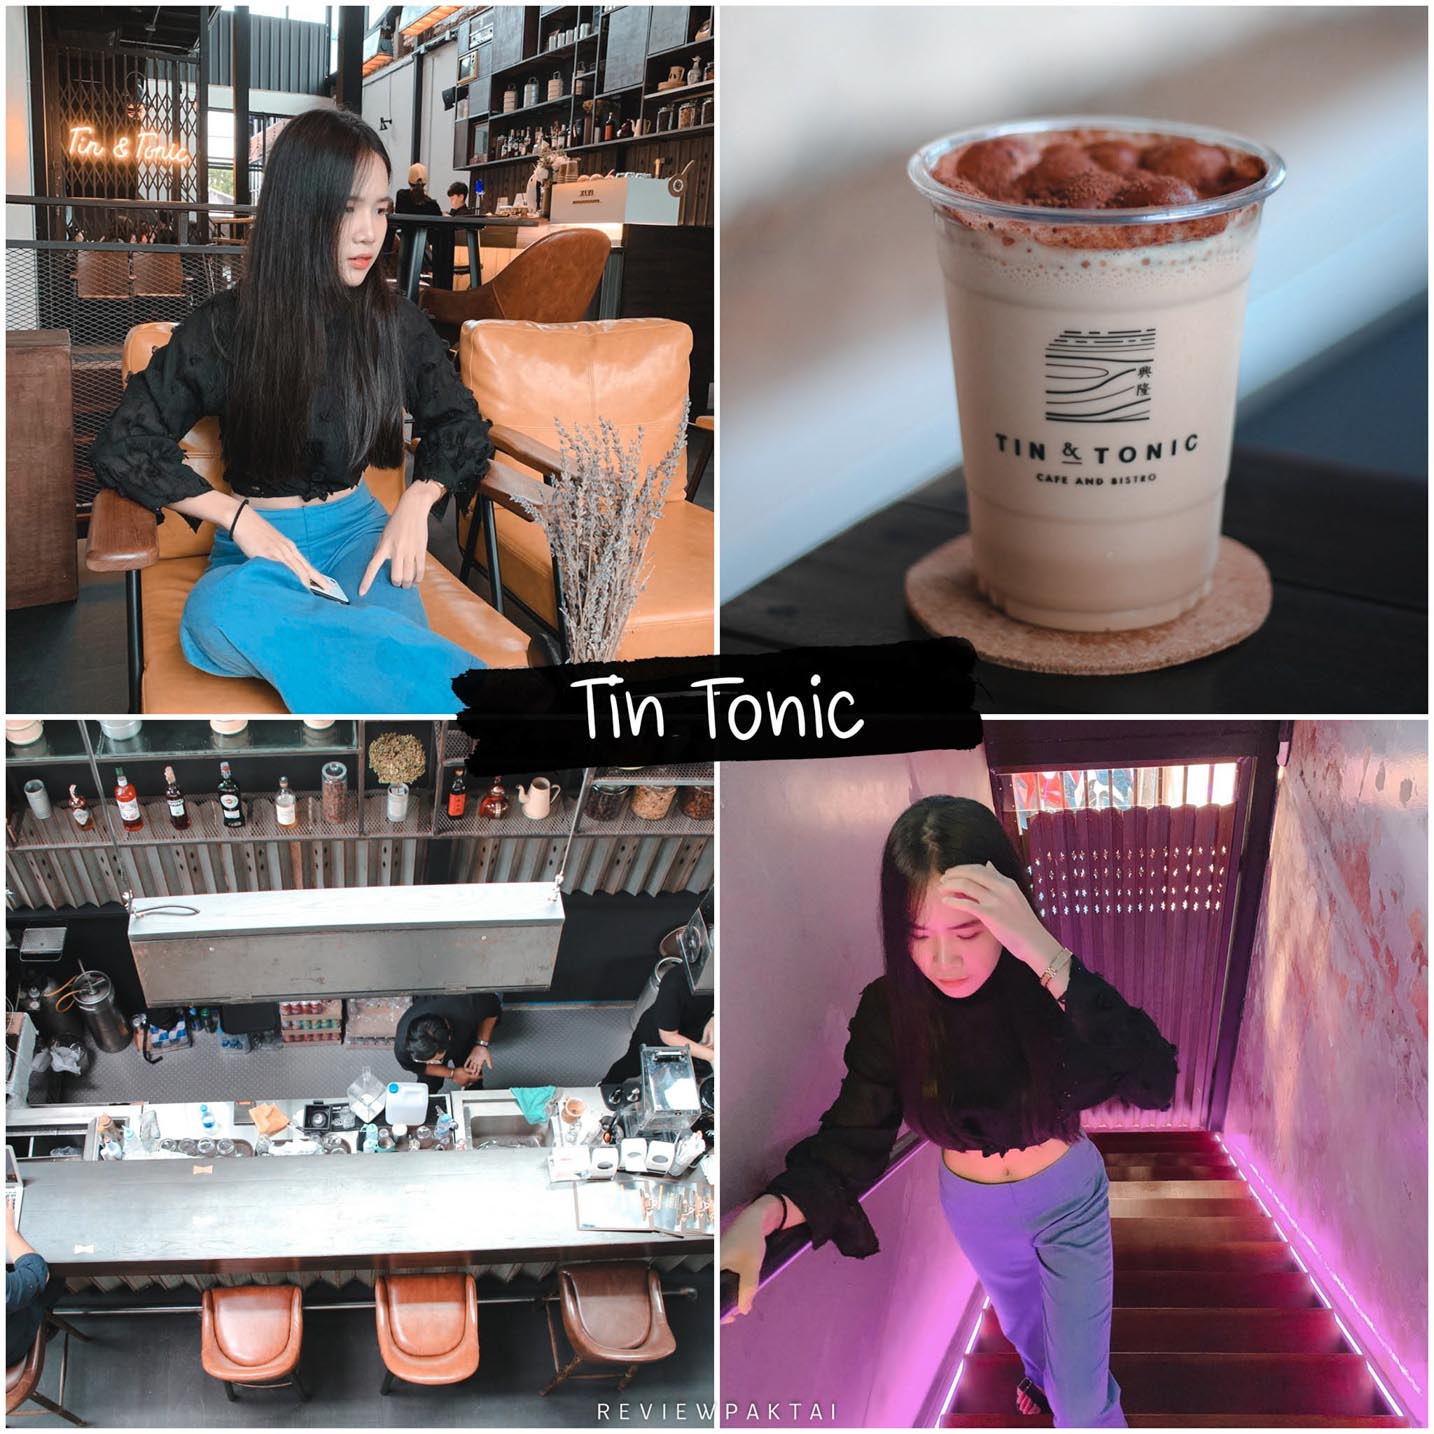 普吉島 Tin & Tonic 咖啡館，保證您不會失望。 拍攝美麗、別緻、獨特的照片。 我可以不去辦理登機手續嗎？